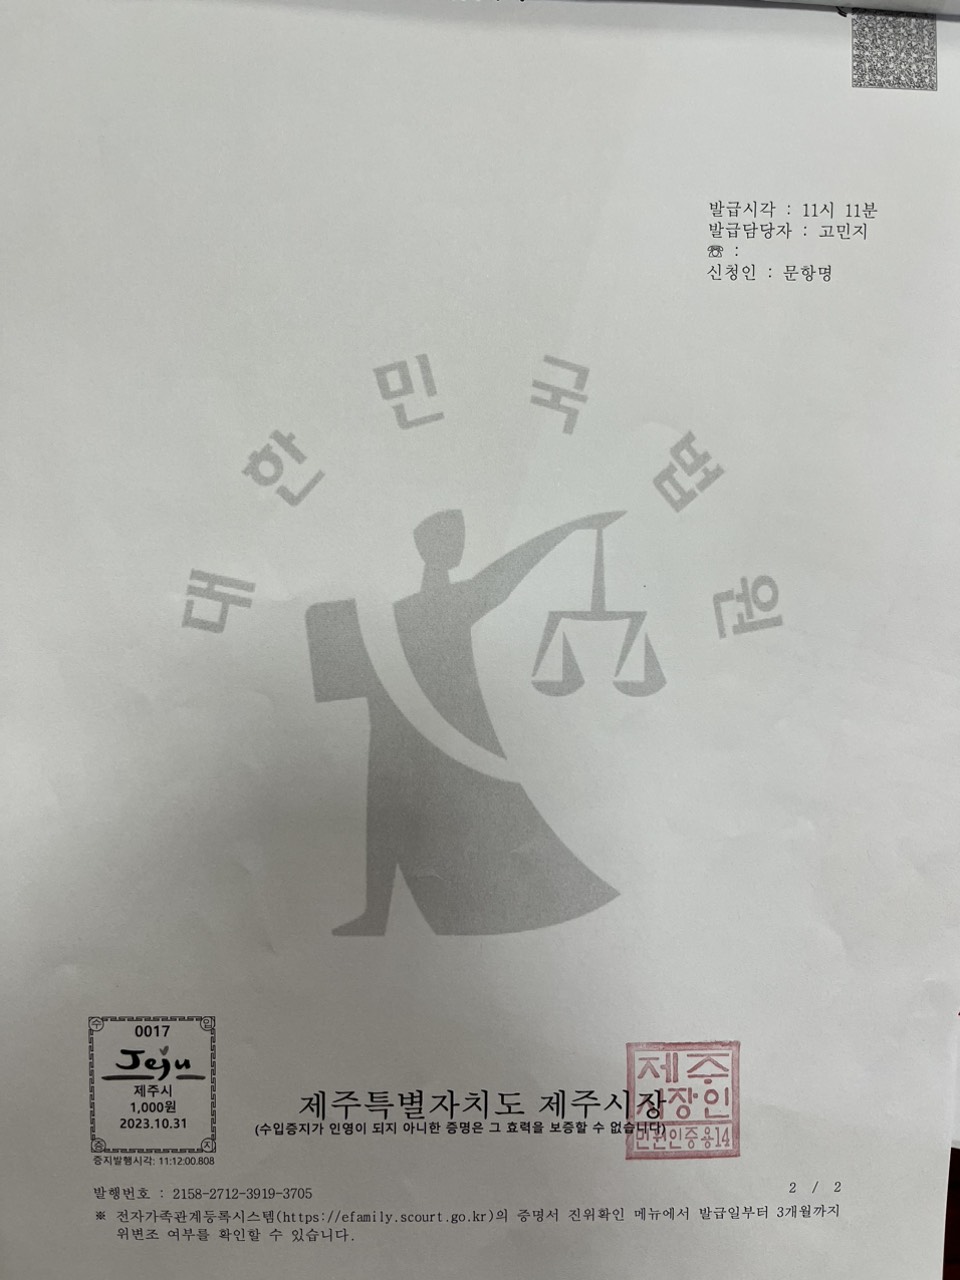 Giấy tờ ghi chú kết hôn | Đăng ký kết hôn với người Hàn tại Hàn Quốc